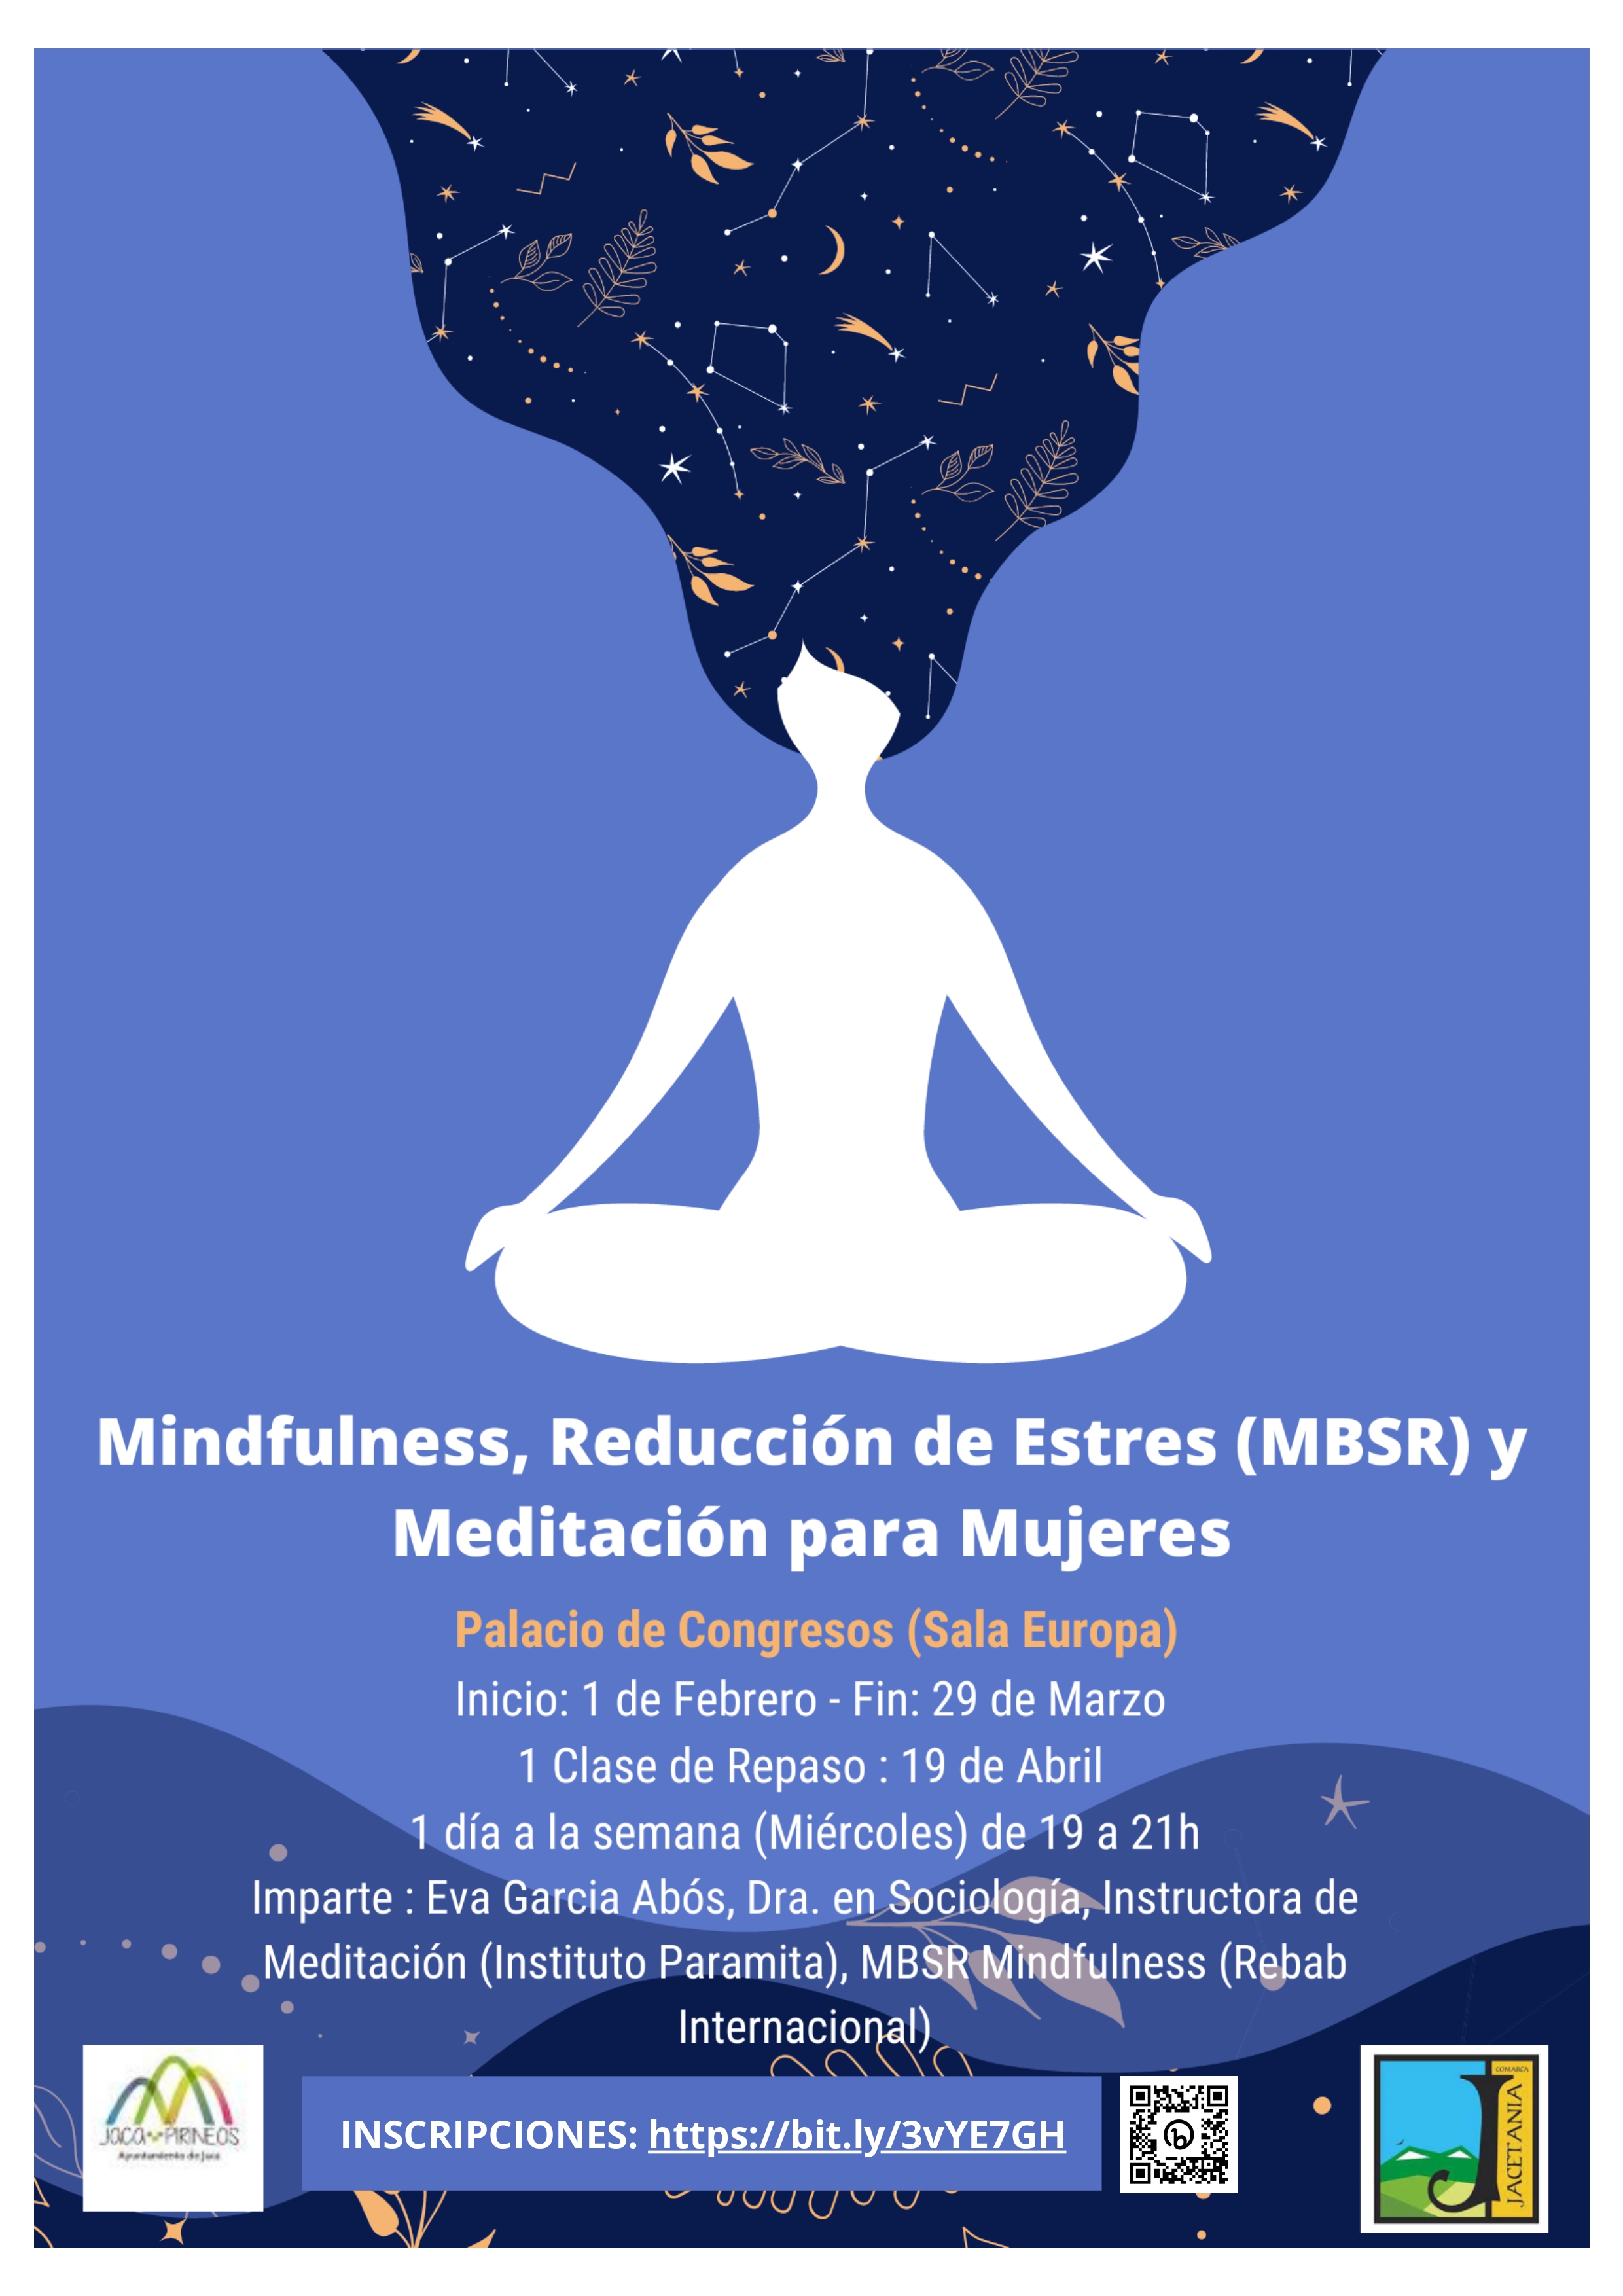 Mindfulness, Reducción de Estrés y Meditación para Mujeres